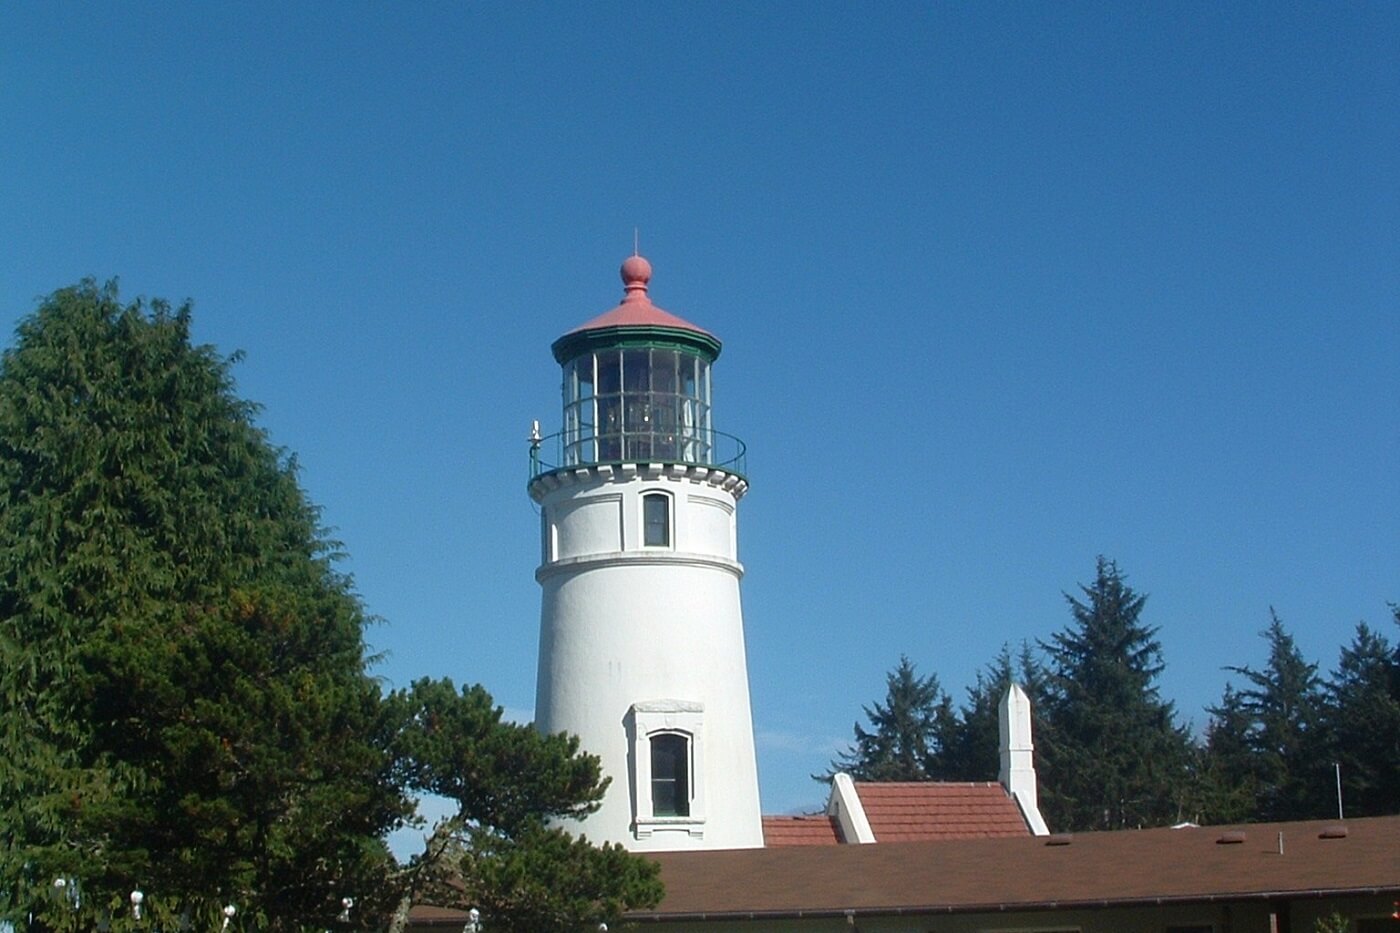 Umpqua Lighthouse in Oregon